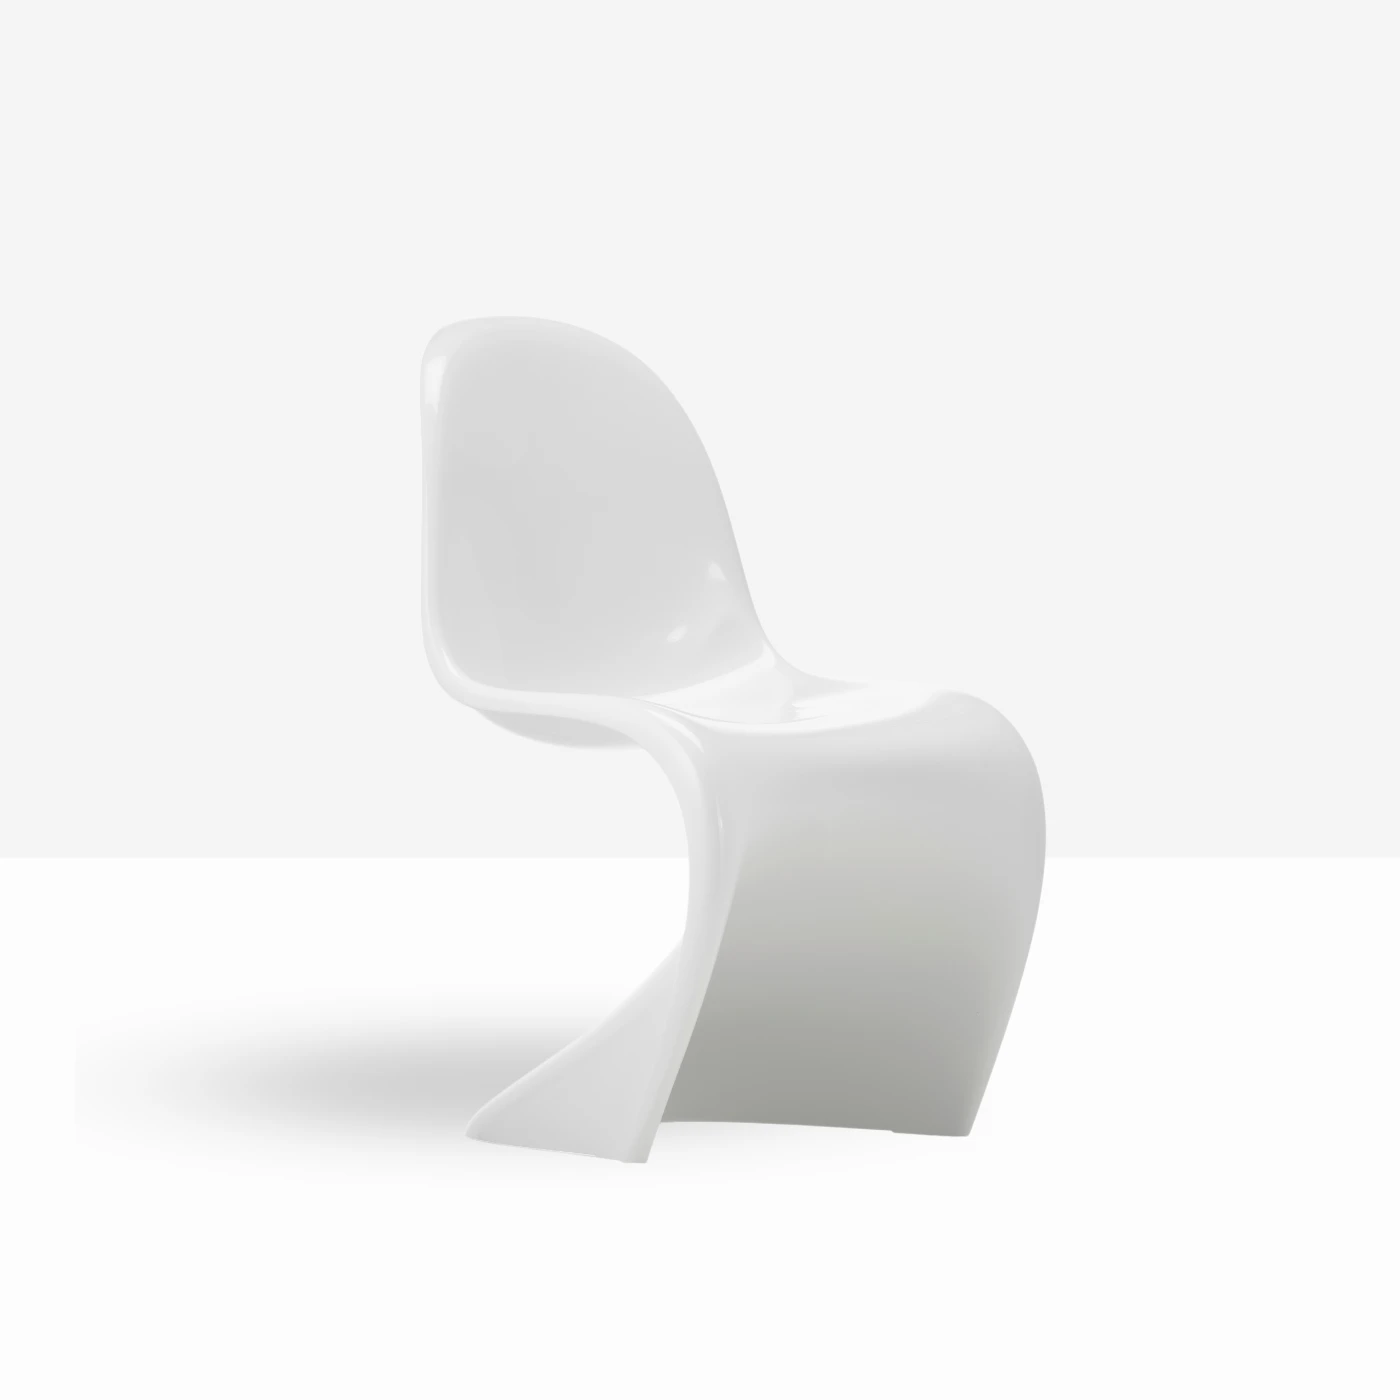 Panton chair at NYED